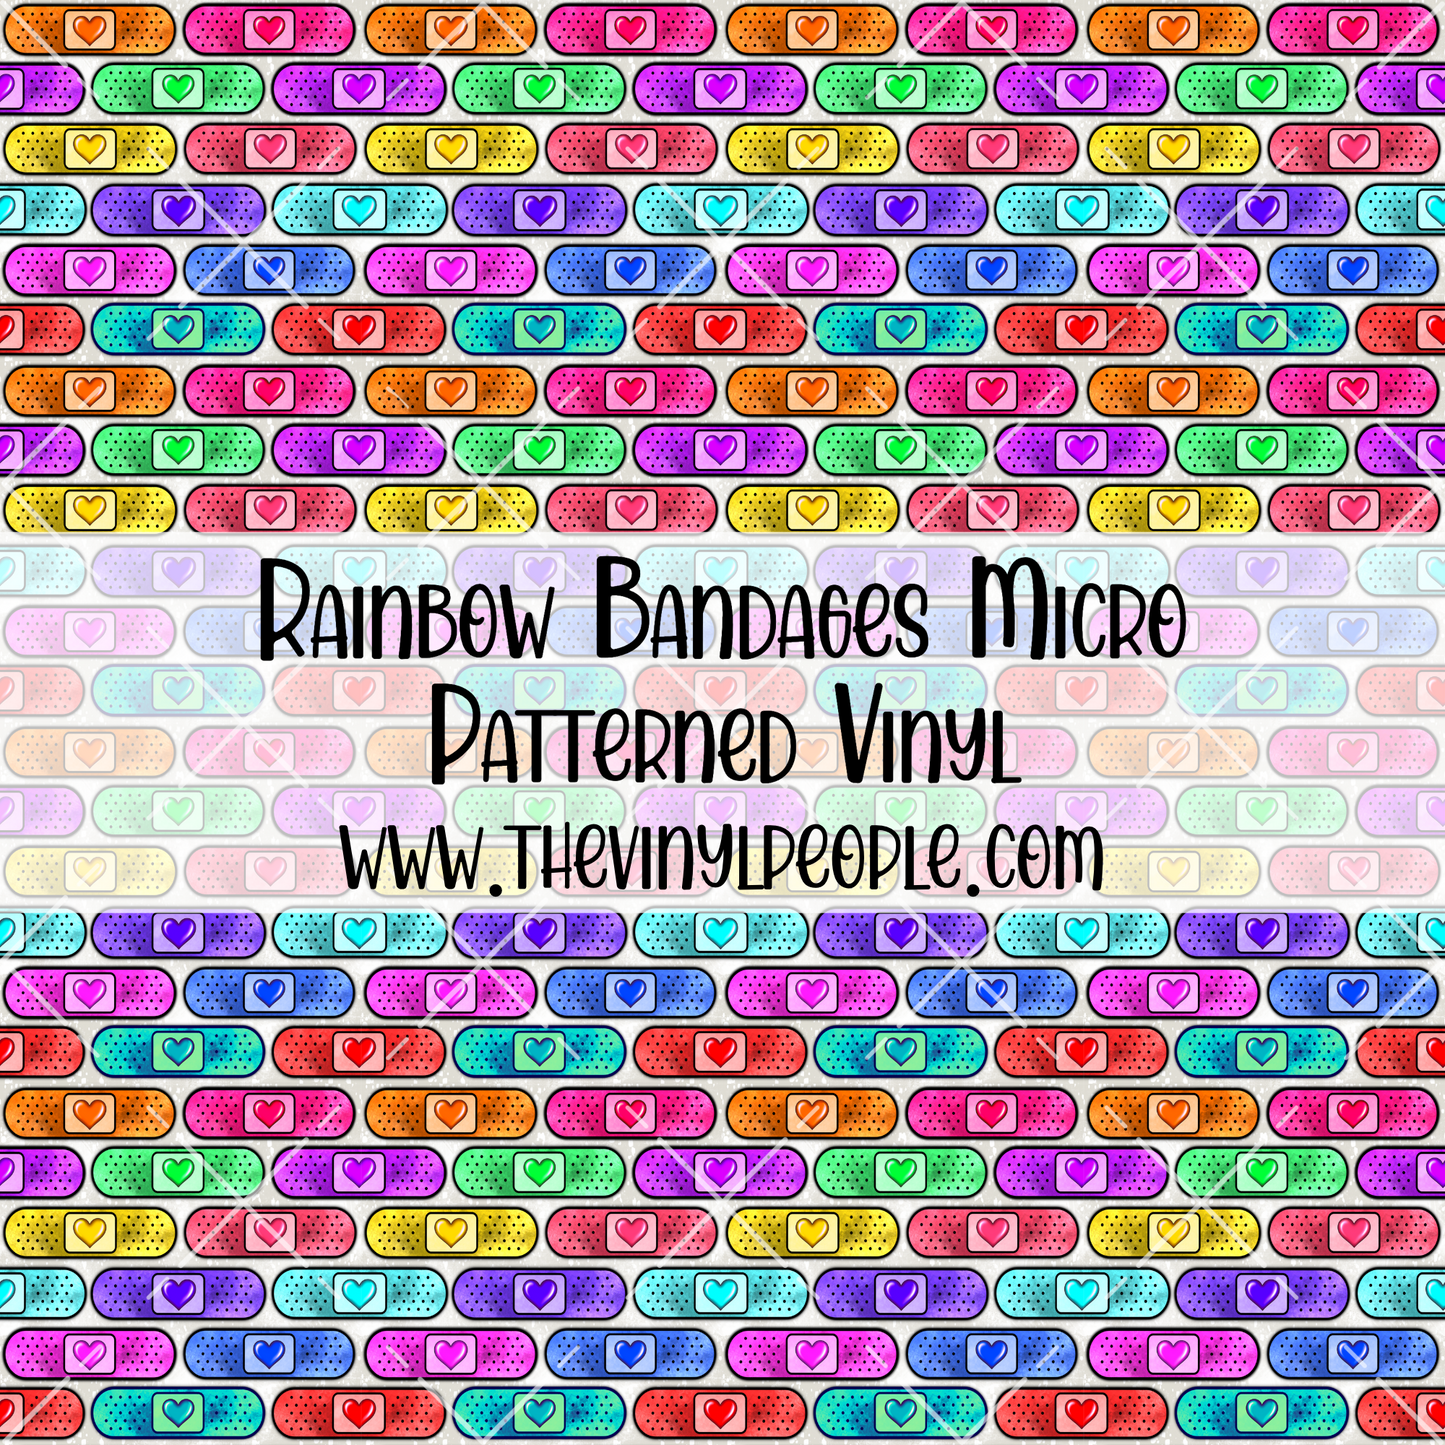 Rainbow Bandages Patterned Vinyl